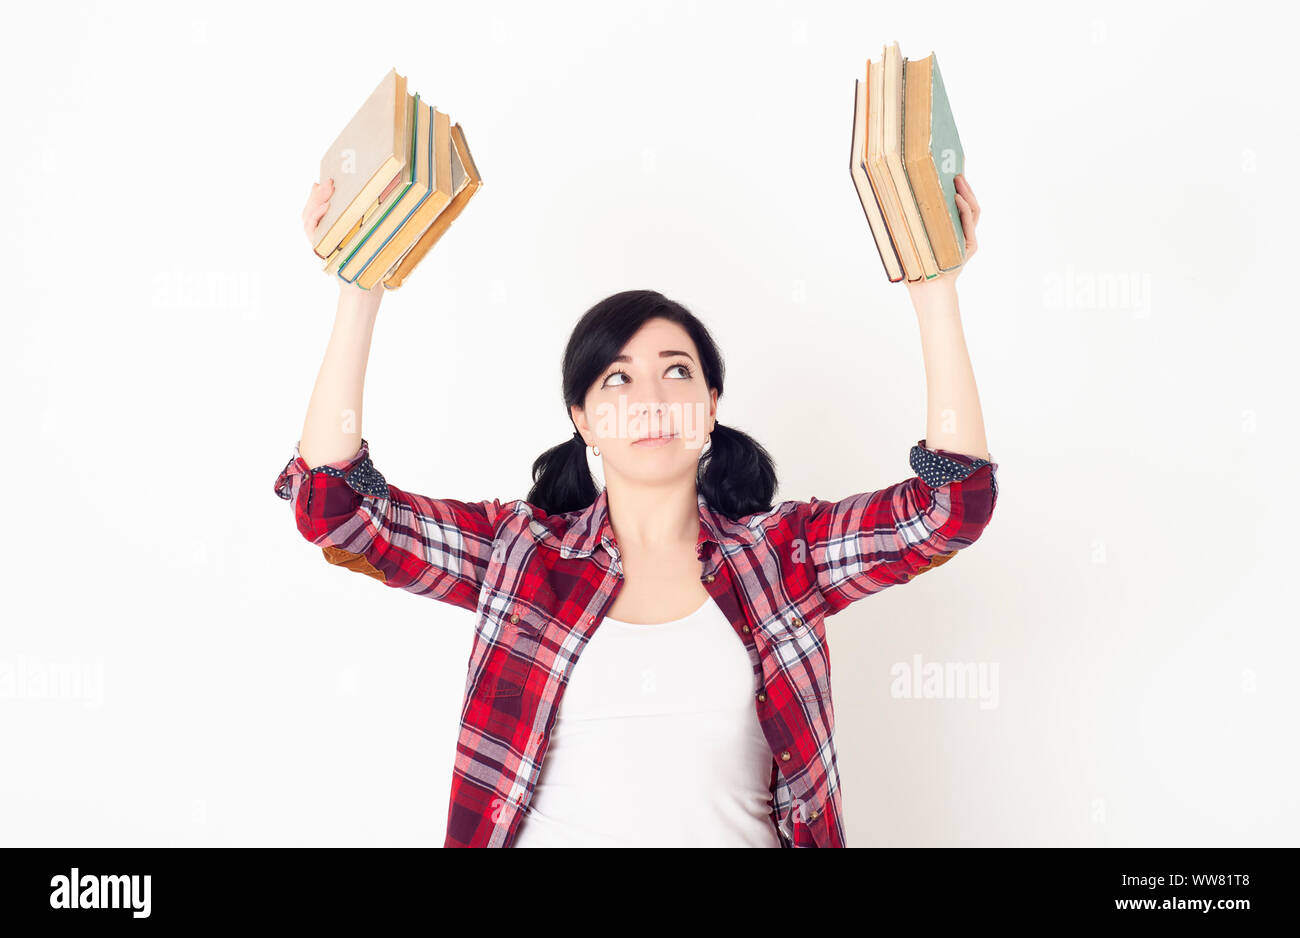 Une jeune fille élève dans une chemise à carreaux rouge tient une pile de livres au sommet de chaque main. Préparation à l'admission à l'université, à une session ou à des examens. Banque D'Images